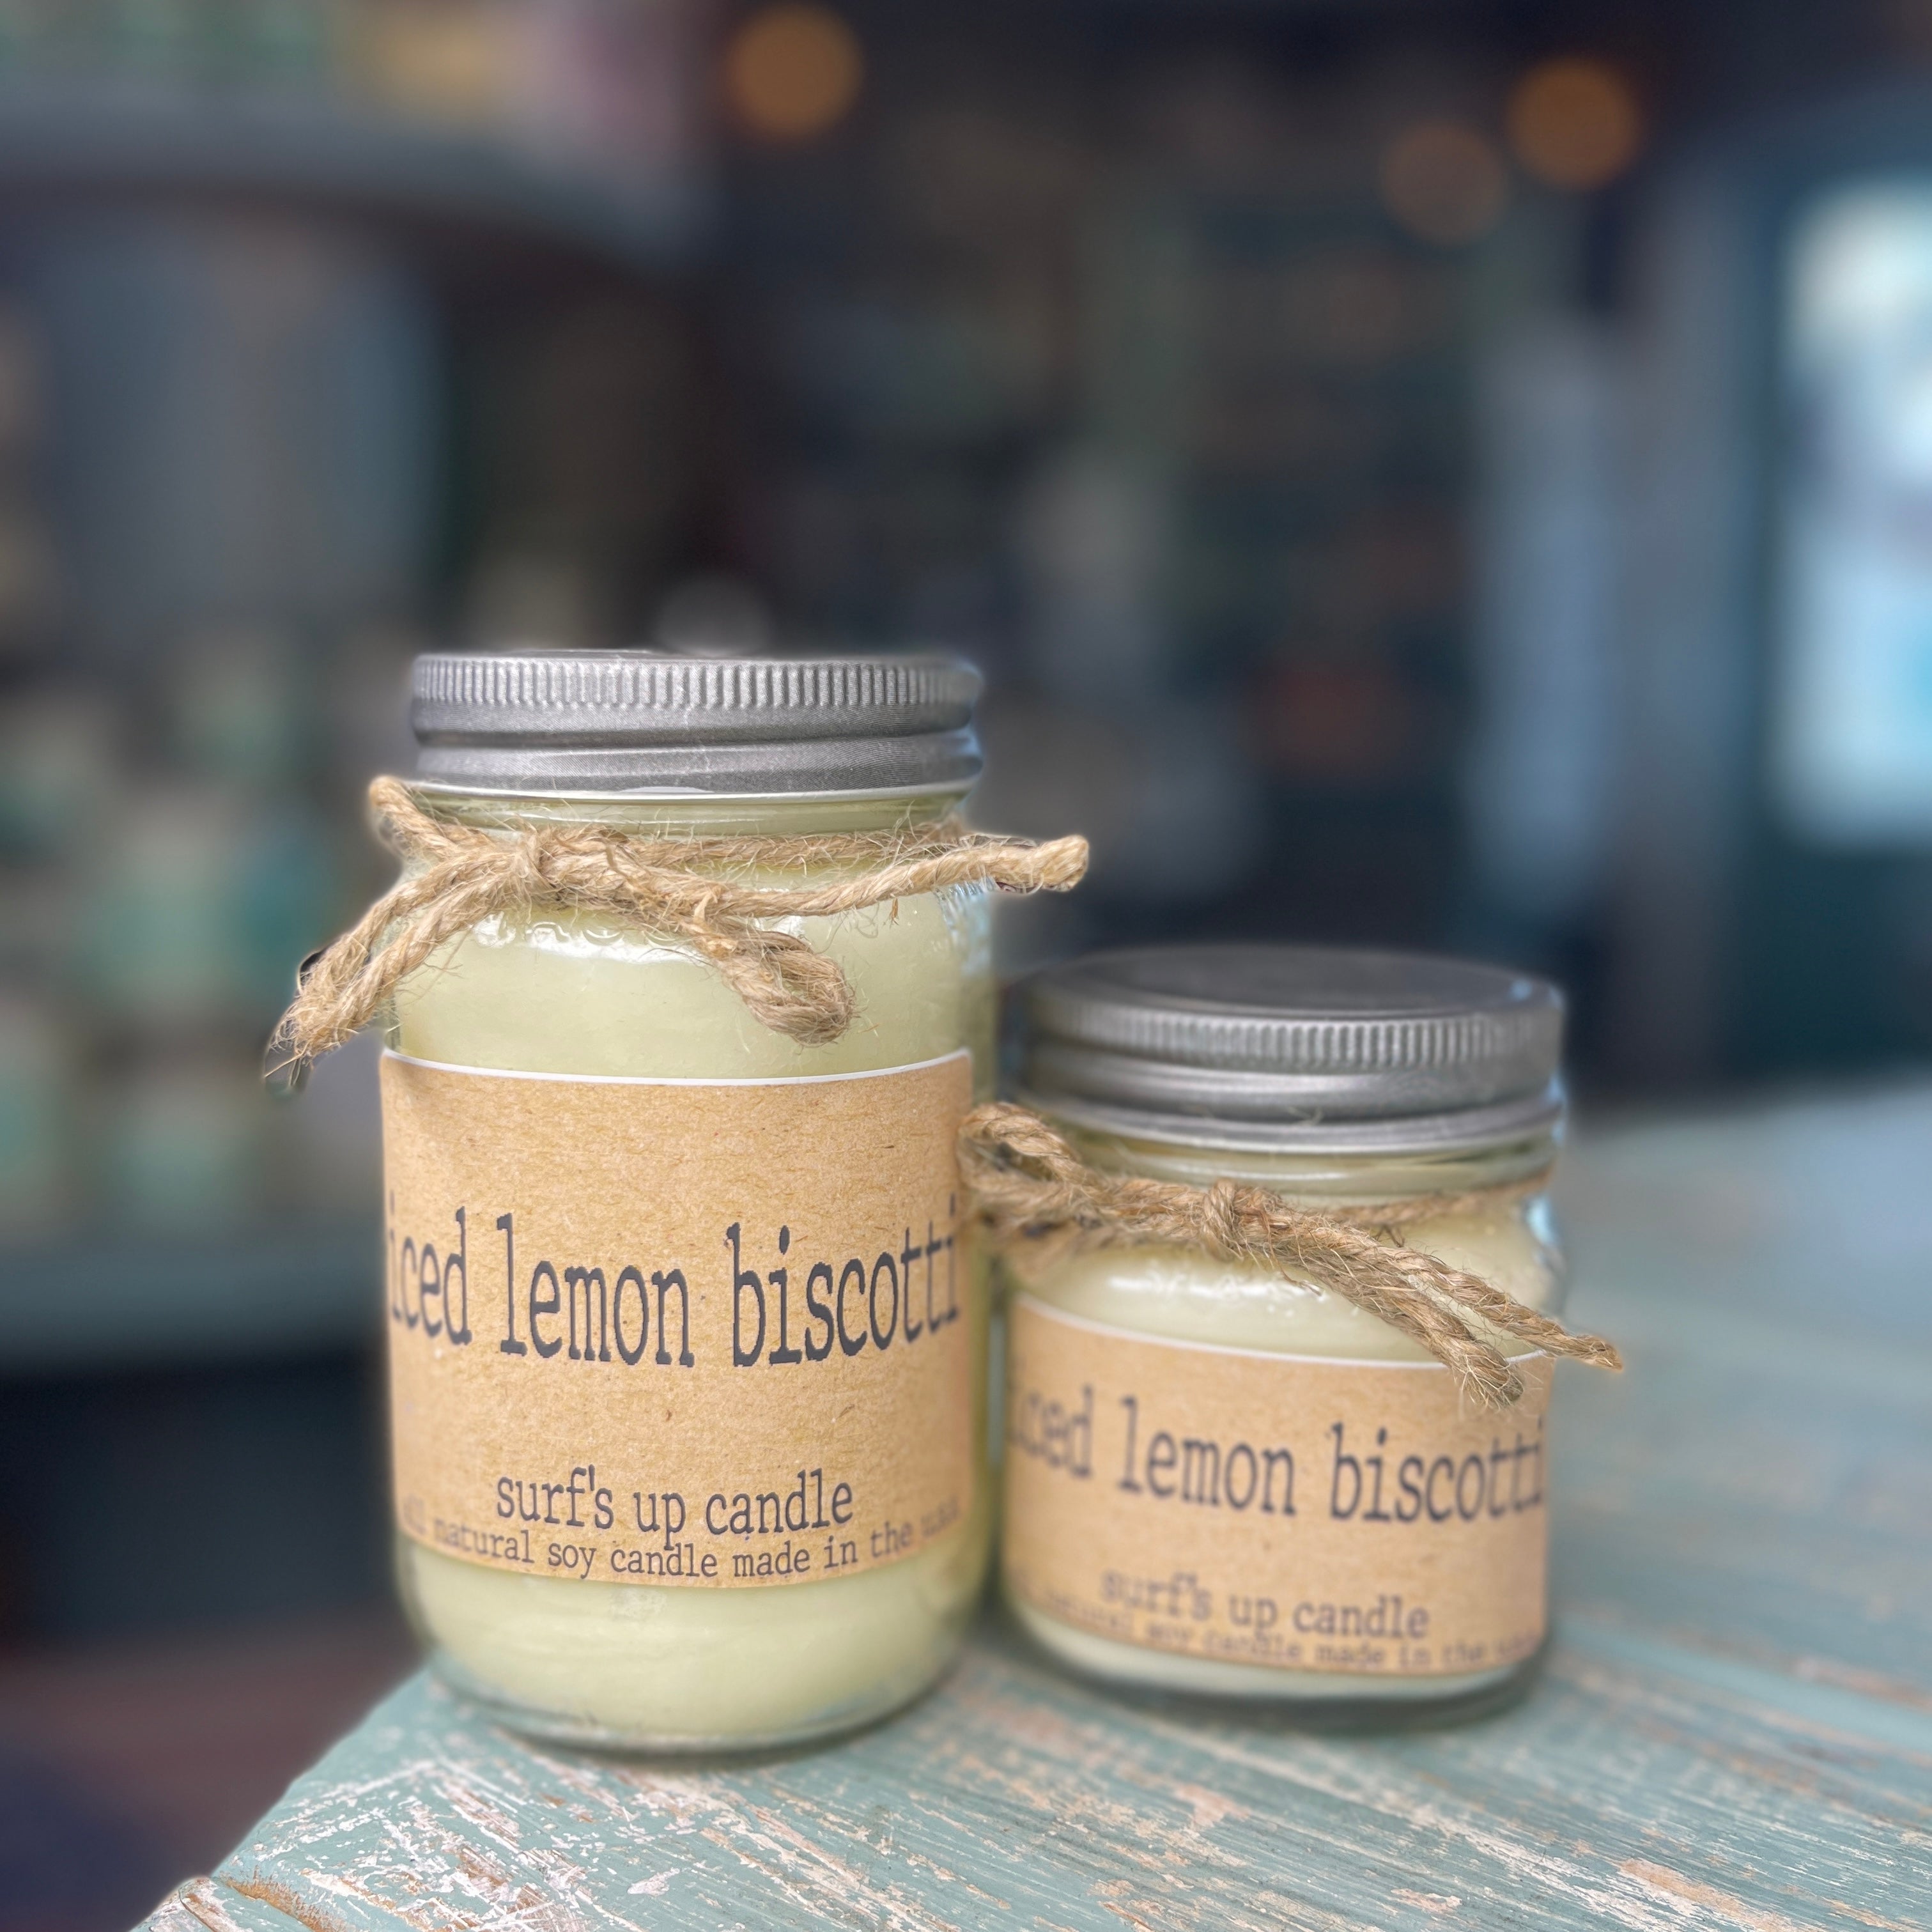 Iced Lemon Biscotti Mason Jar Candle - Brown Bag Collection